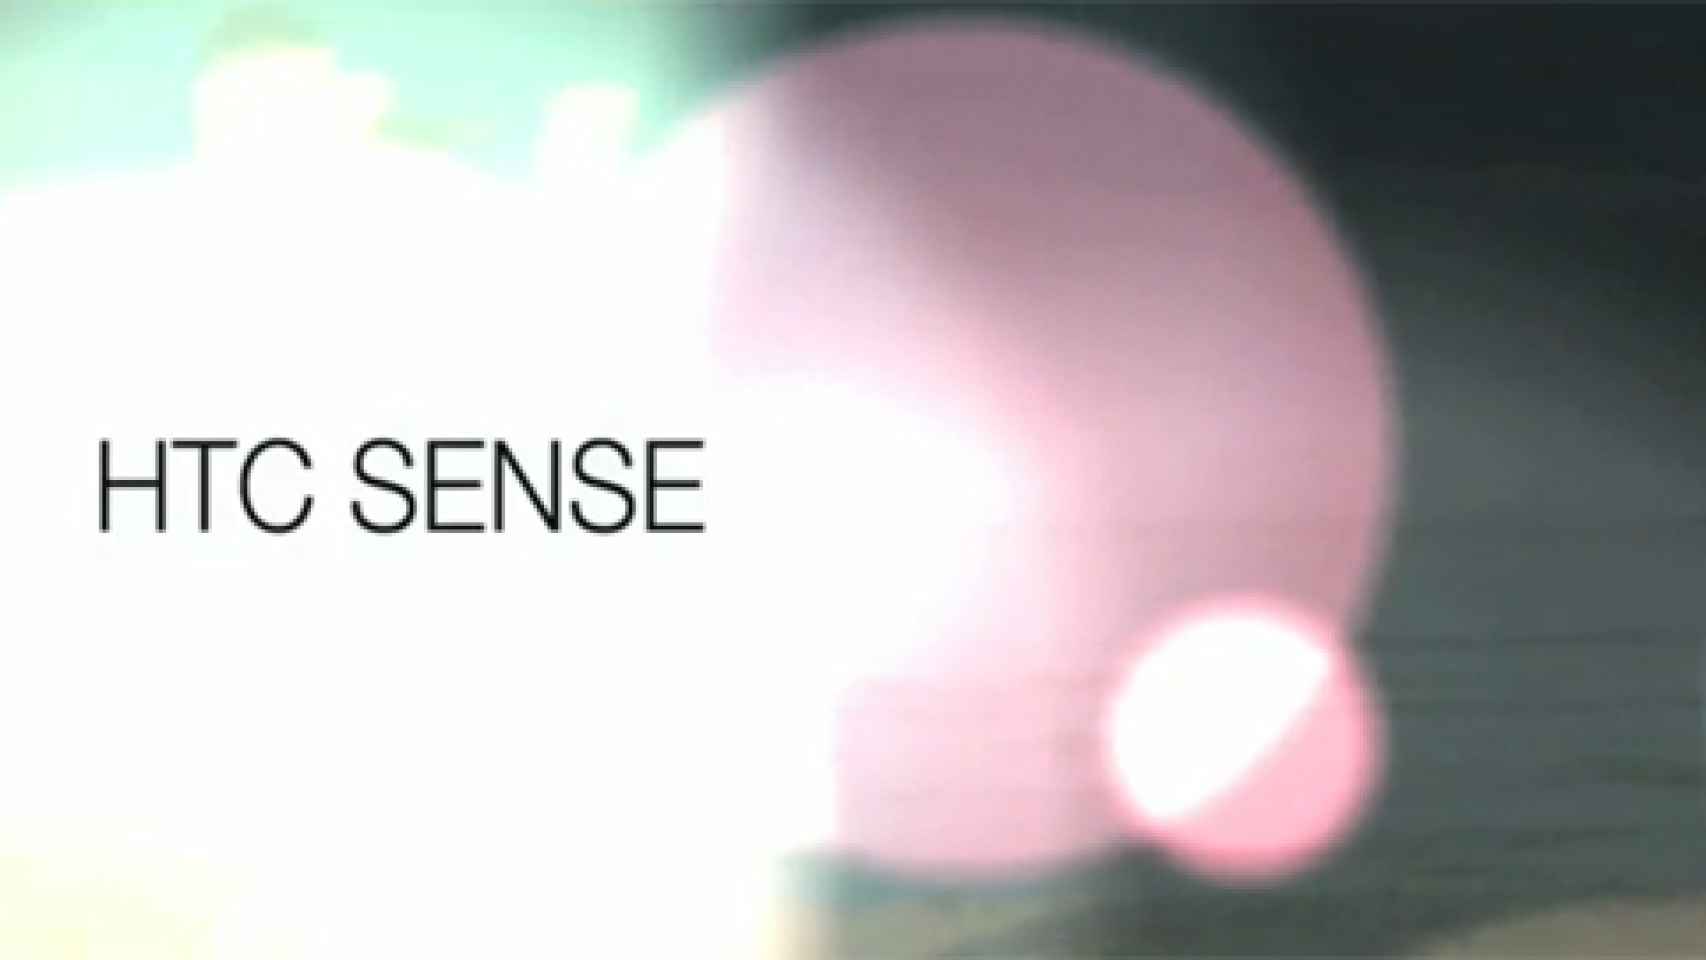 HTC Sense 5.5 se muestra en imágenes y revela nuevas funciones: Desactivar Blinkfeed, nuevos modos de cámara y más